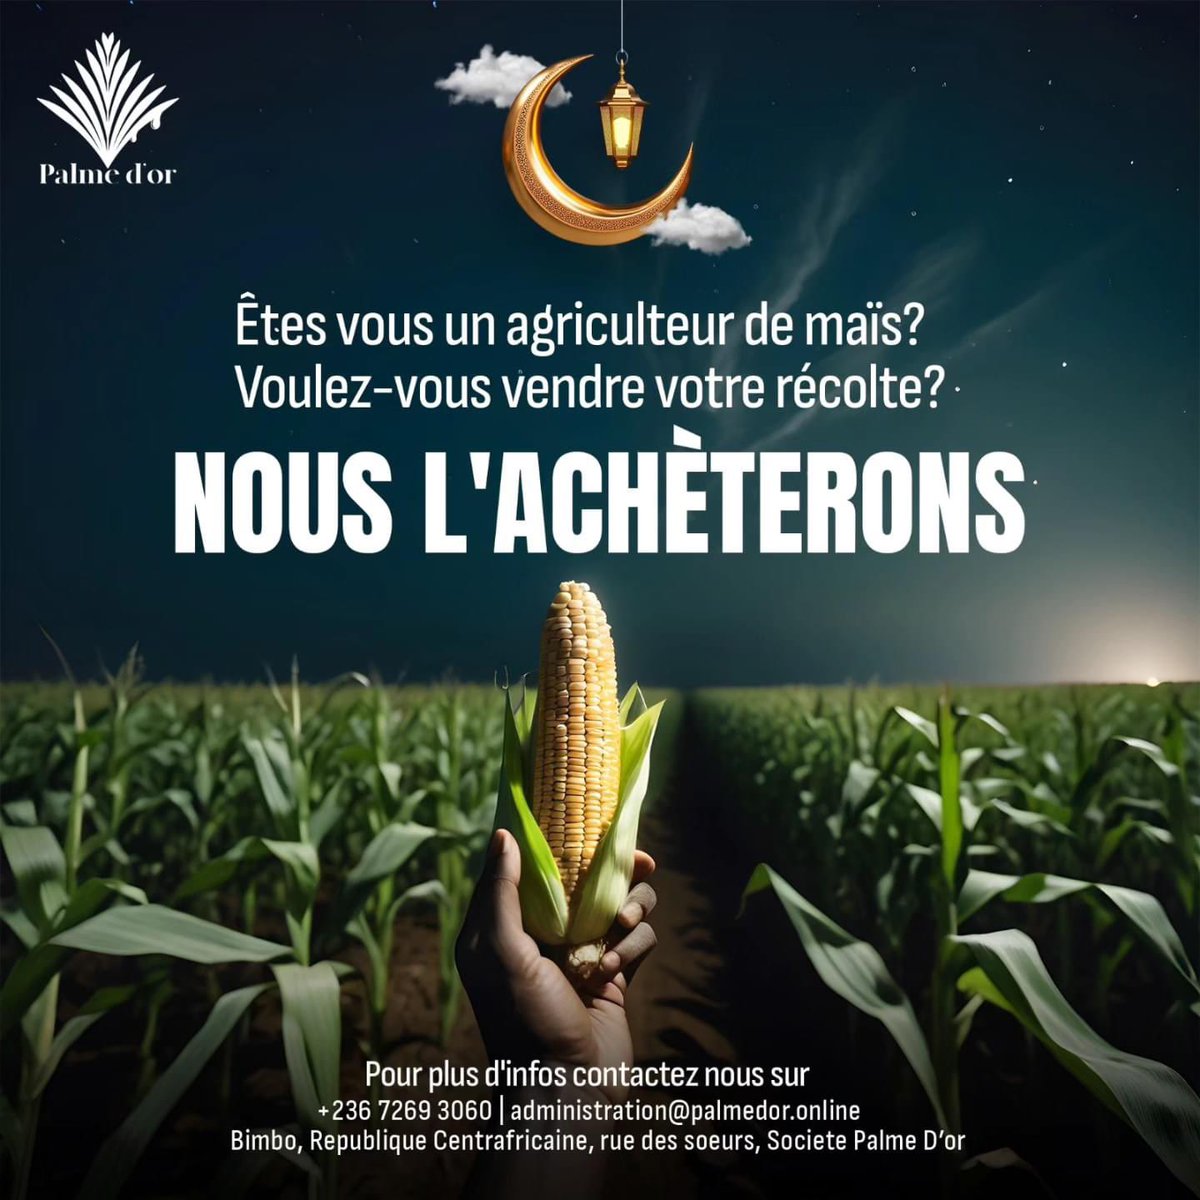 Désirez-vous vendre vos récoltes de maïs ?
𝙉𝙤𝙪𝙨 𝙨𝙤𝙢𝙢𝙚𝙨 𝙥𝙧ê𝙩𝙨 à 𝙡𝙚𝙨 𝙖𝙘𝙝𝙚𝙩𝙚𝙧 Contactez nous sur +236 7269 3060| administration@palmedor.online

#PalmeDor #PalmOil #centrafrique